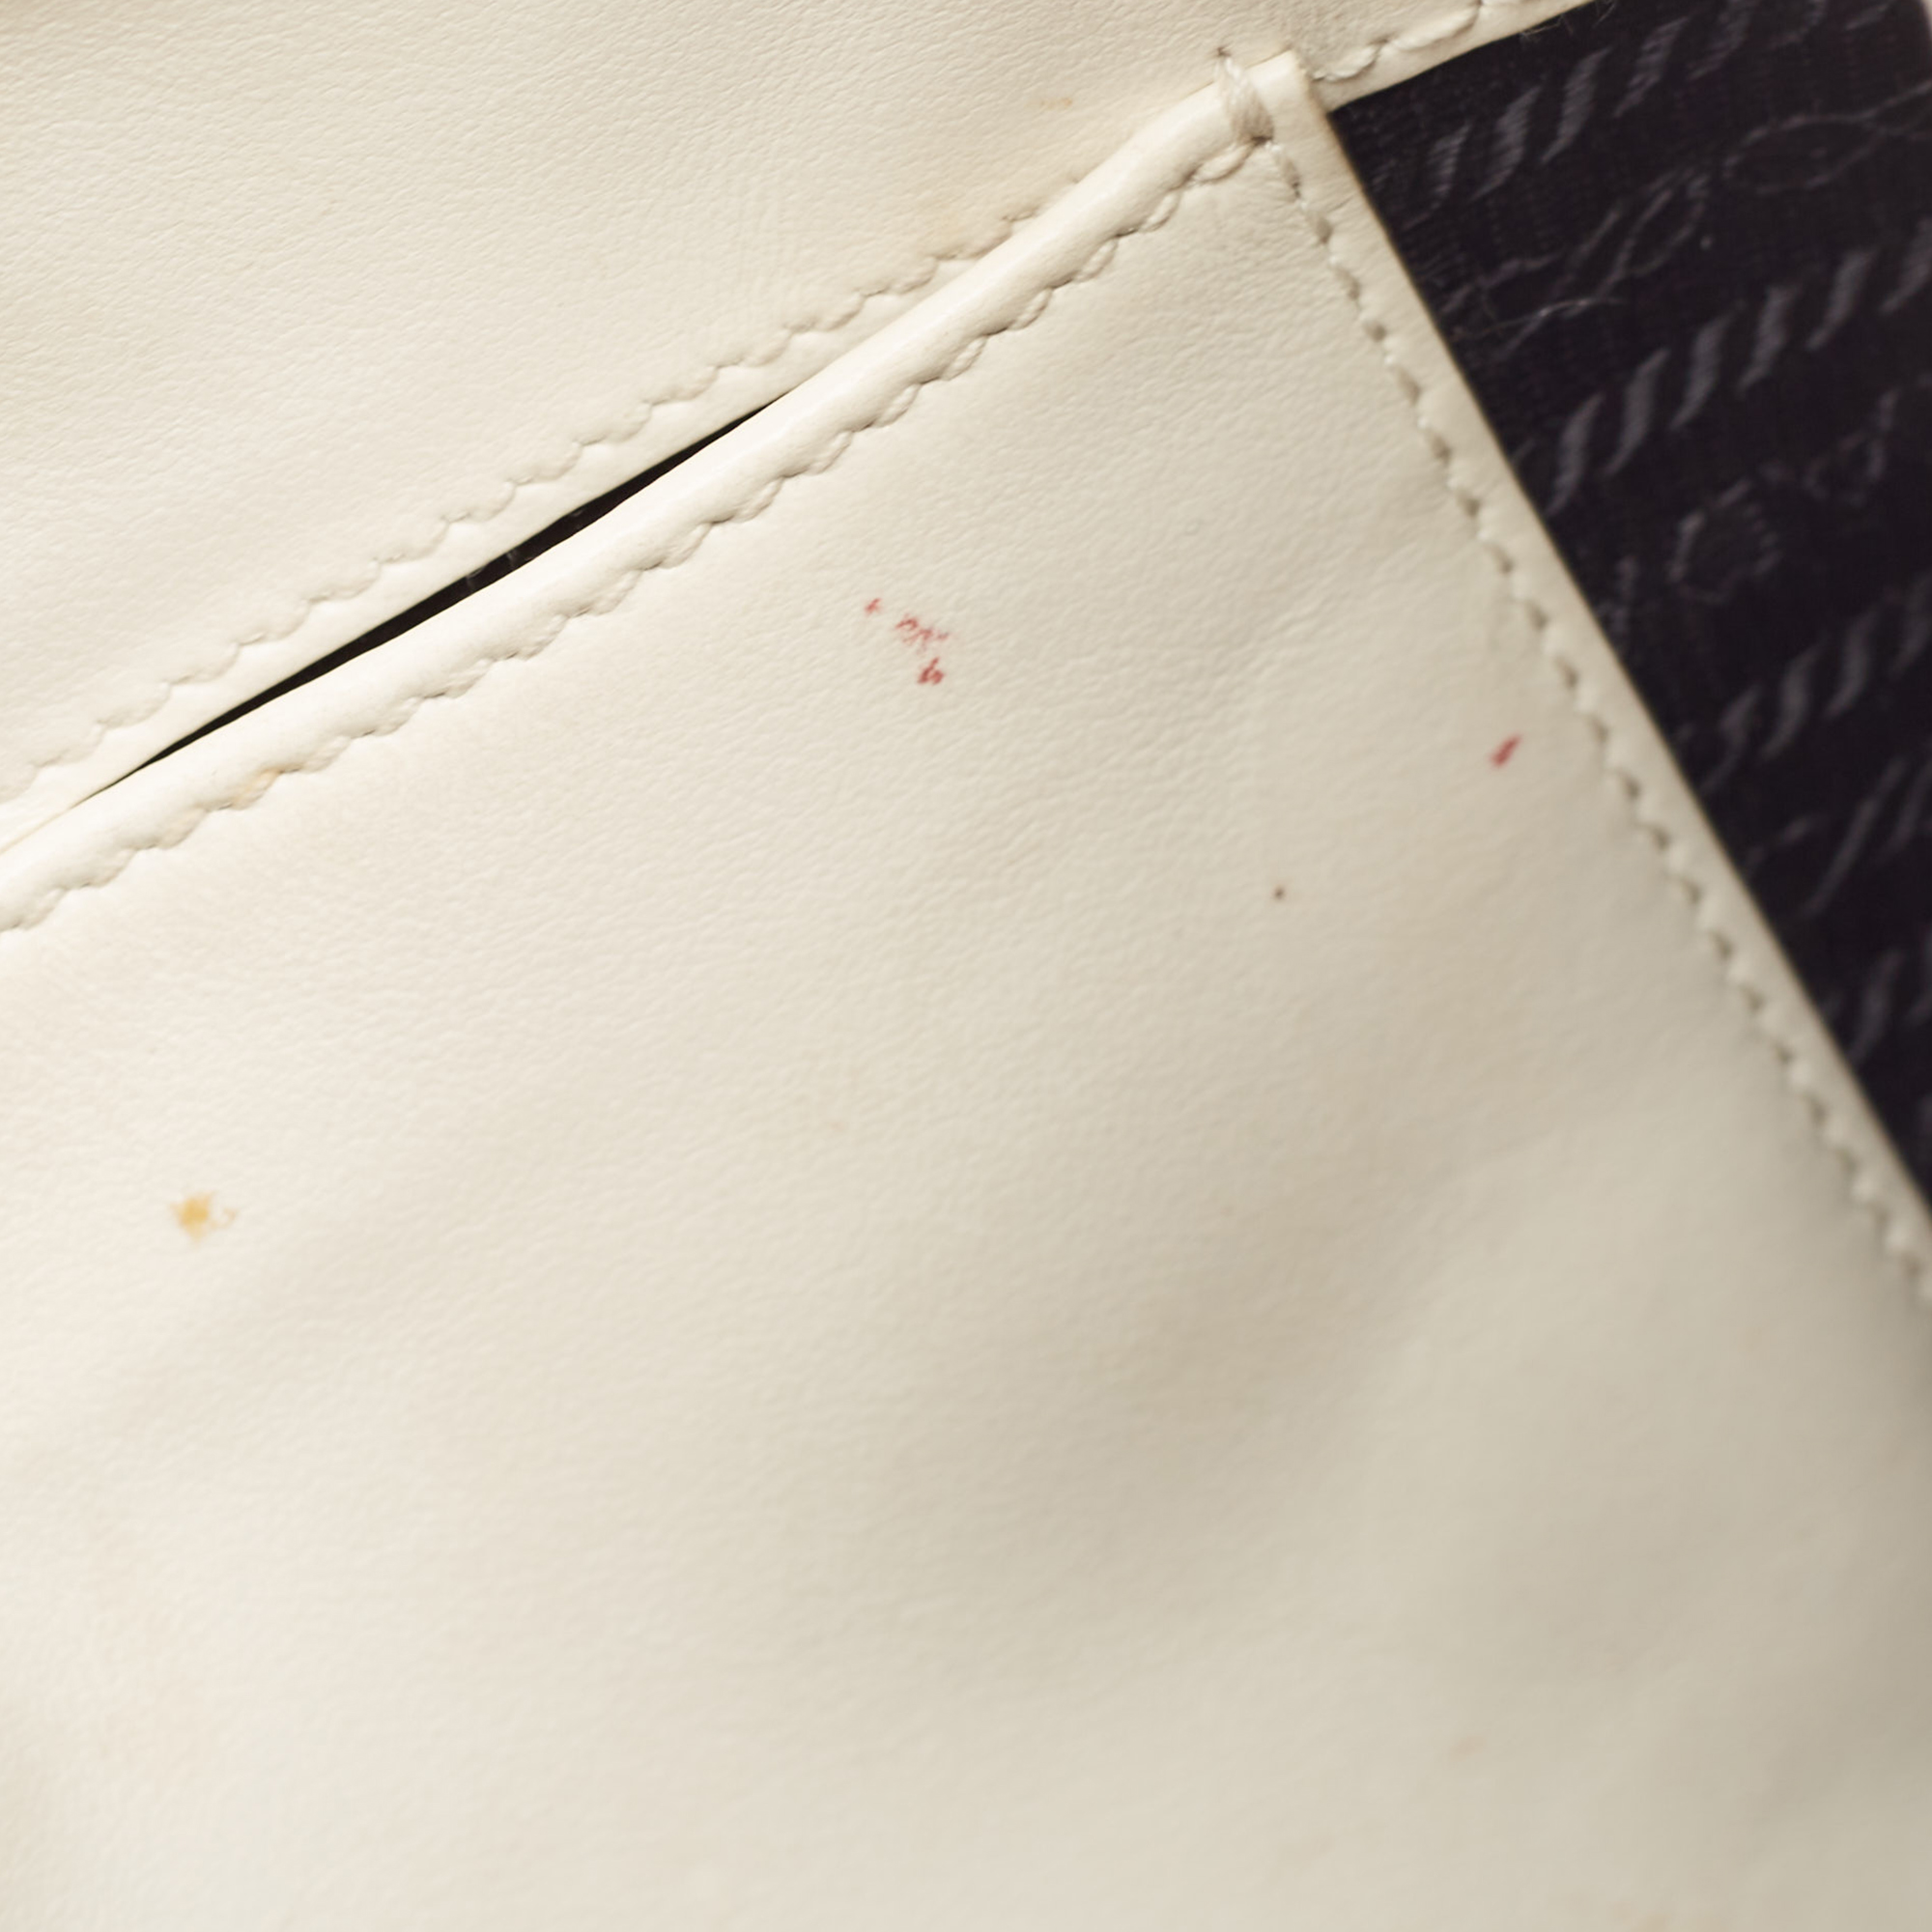 Prada White Brushed Leather Cleo Shoulder Bag